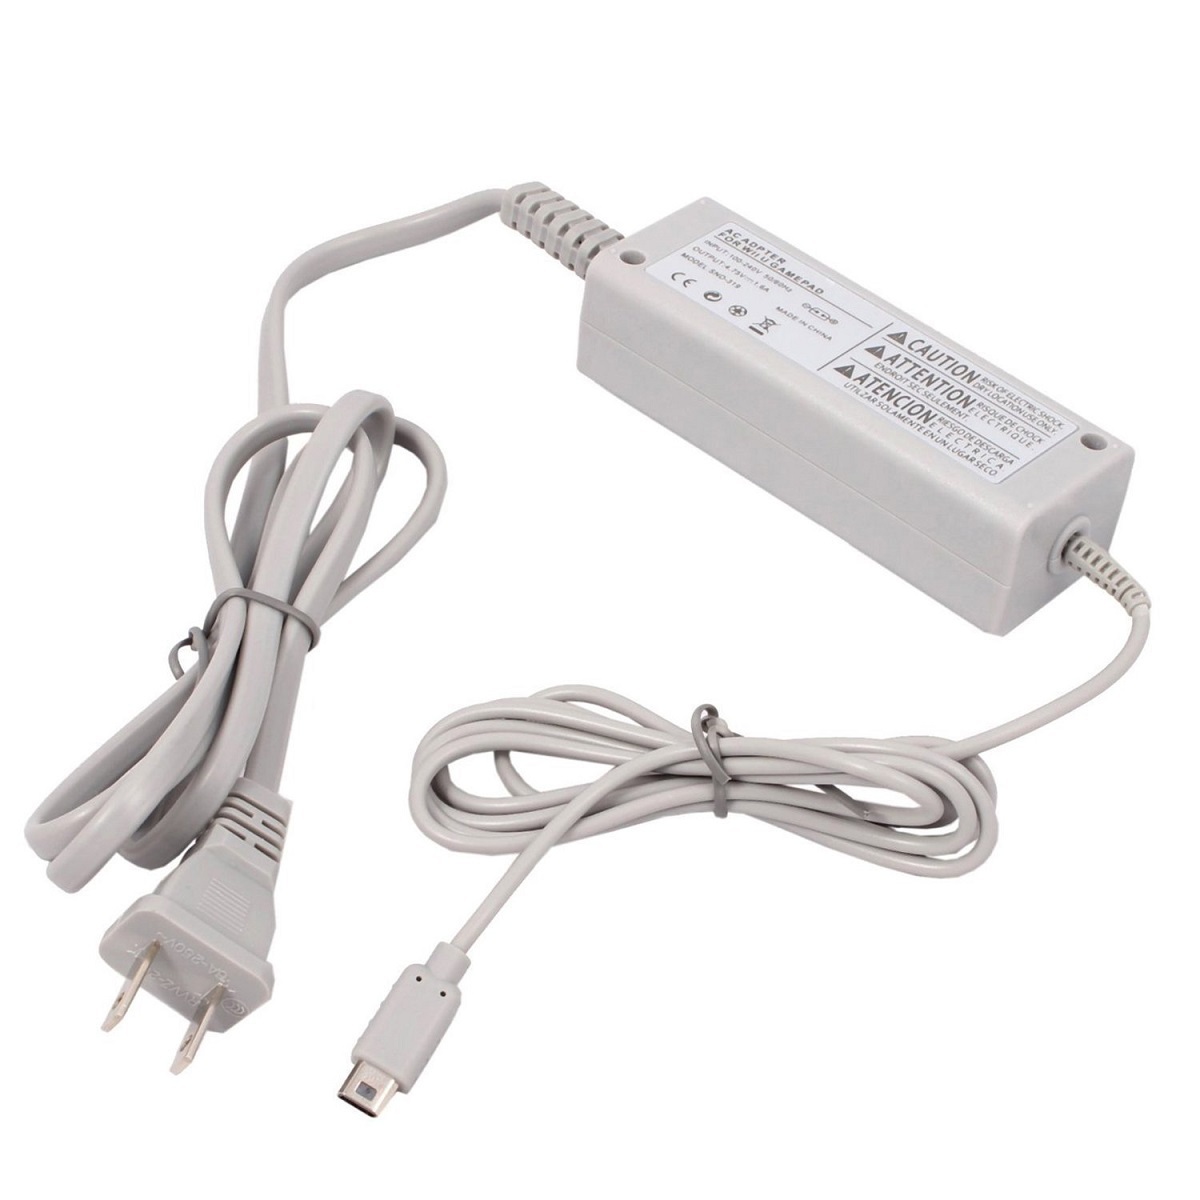 任天堂 Wii U本体 GamePad ゲームパッド 充電スタンド用 充電器ACアダプター 互換品_画像3